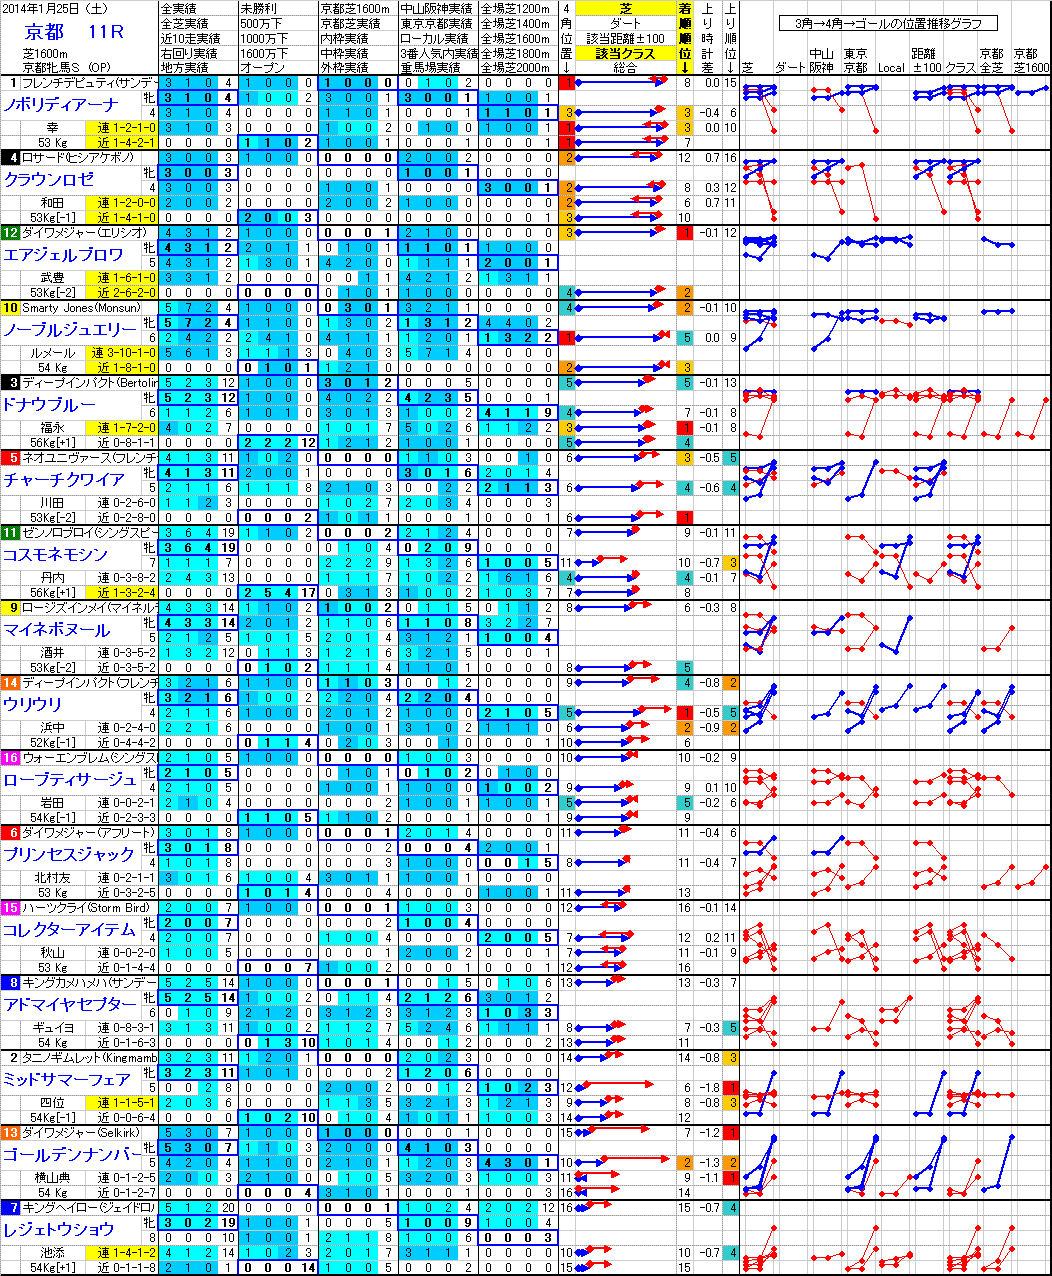 京都 2014年1月25日 （土） ： 11R － 分析データ